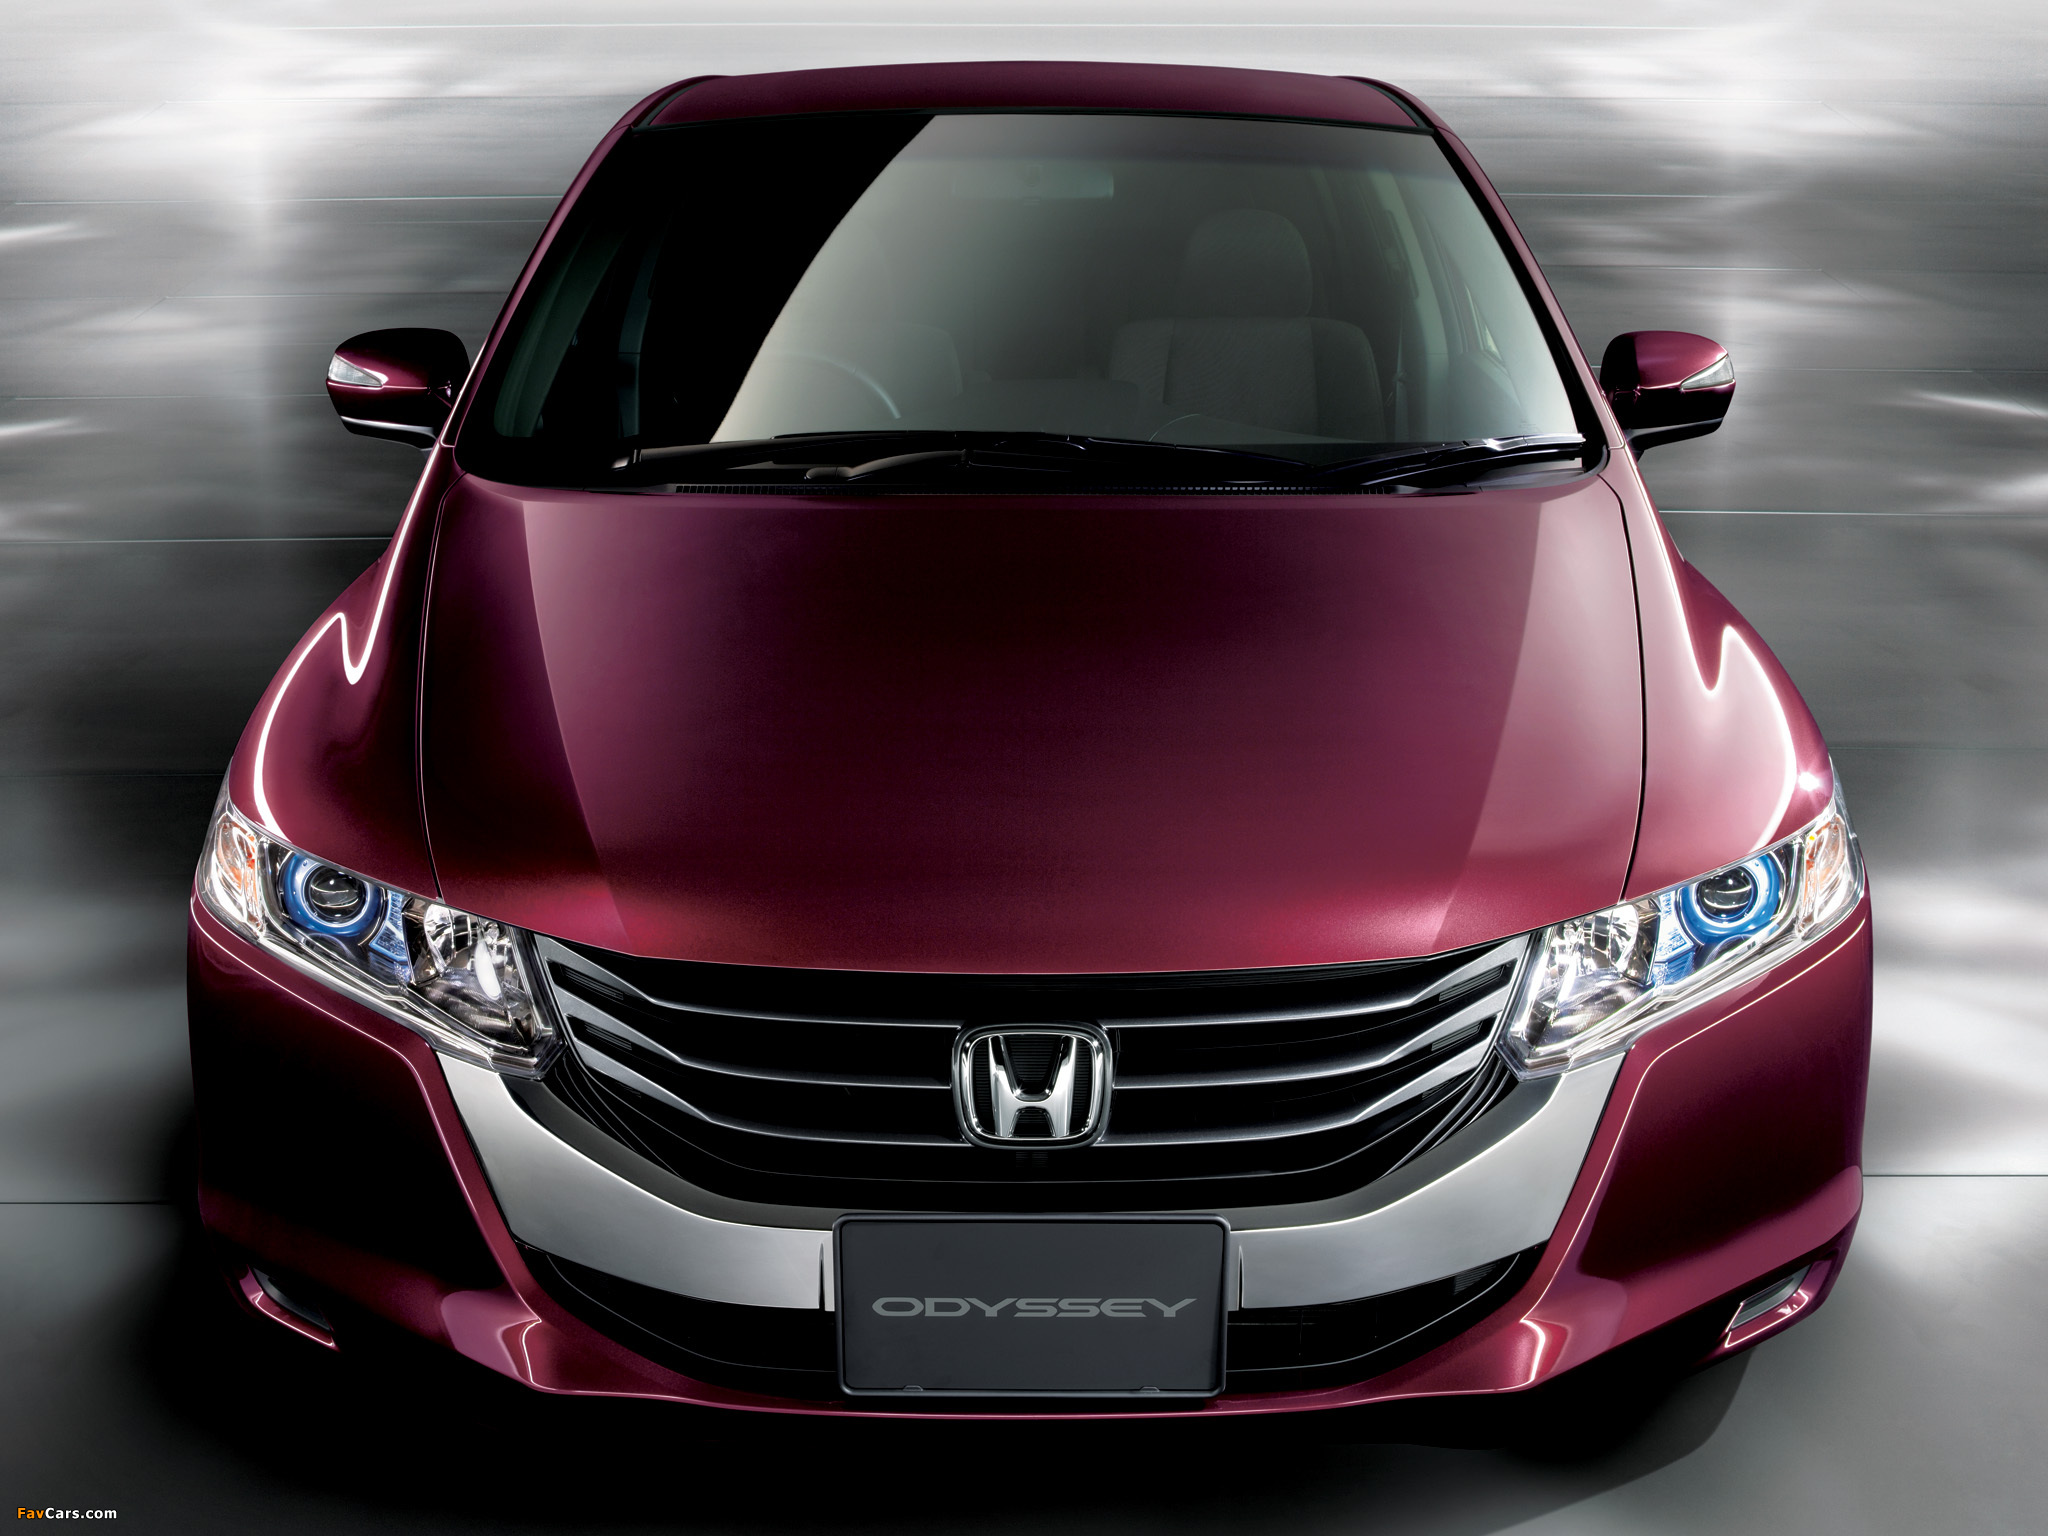 Honda название. Honda Odyssey 4. Honda Odyssey Модельный ряд. Хонда Модельный ряд 2016. Хонда праворульная Модельный ряд.